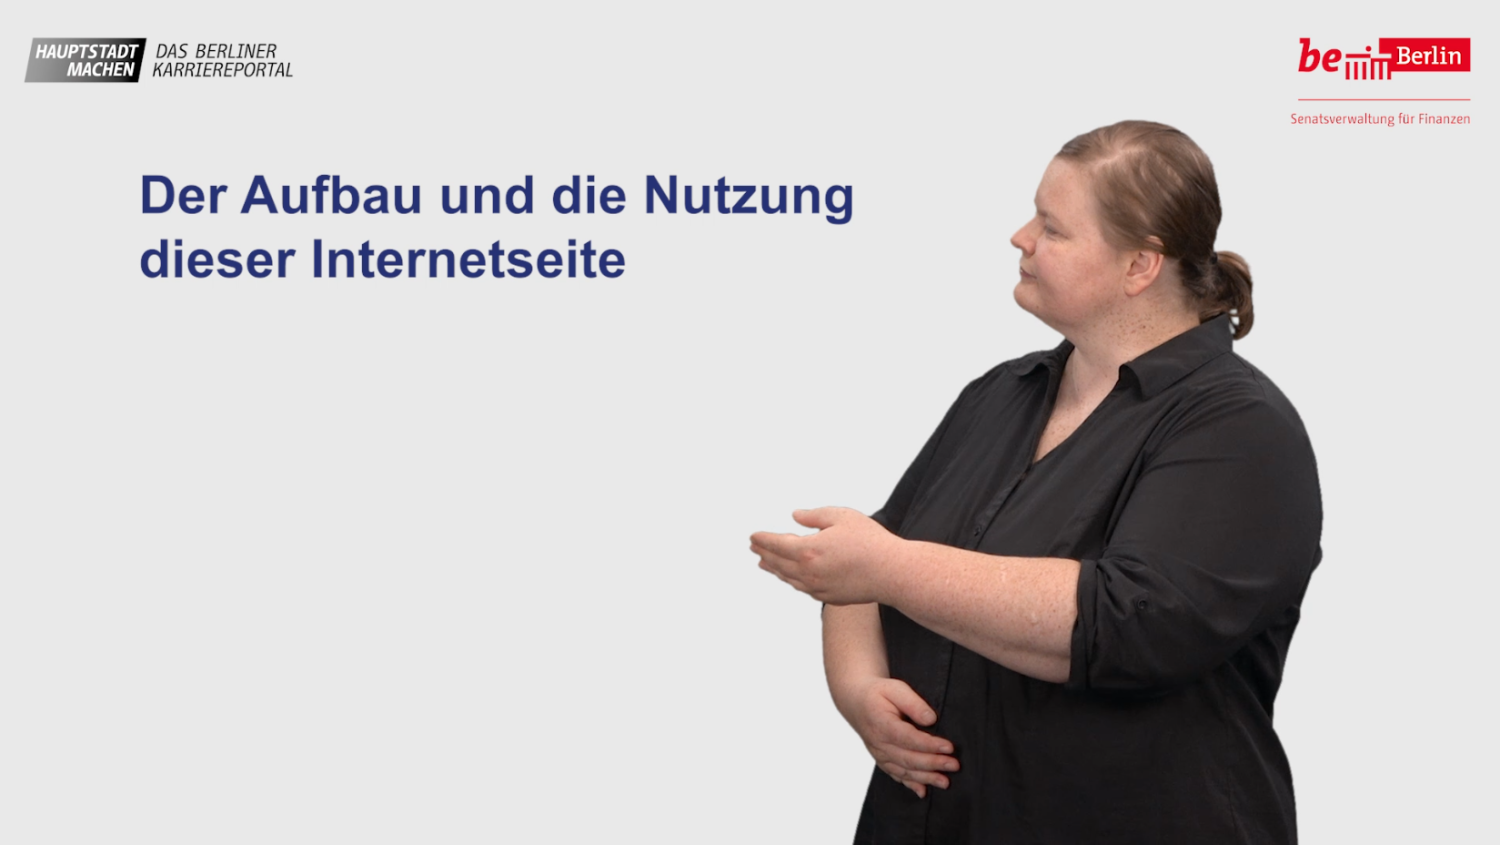 Titelbild des Gebärdensprachevideos zur Navigation im Karriereportal